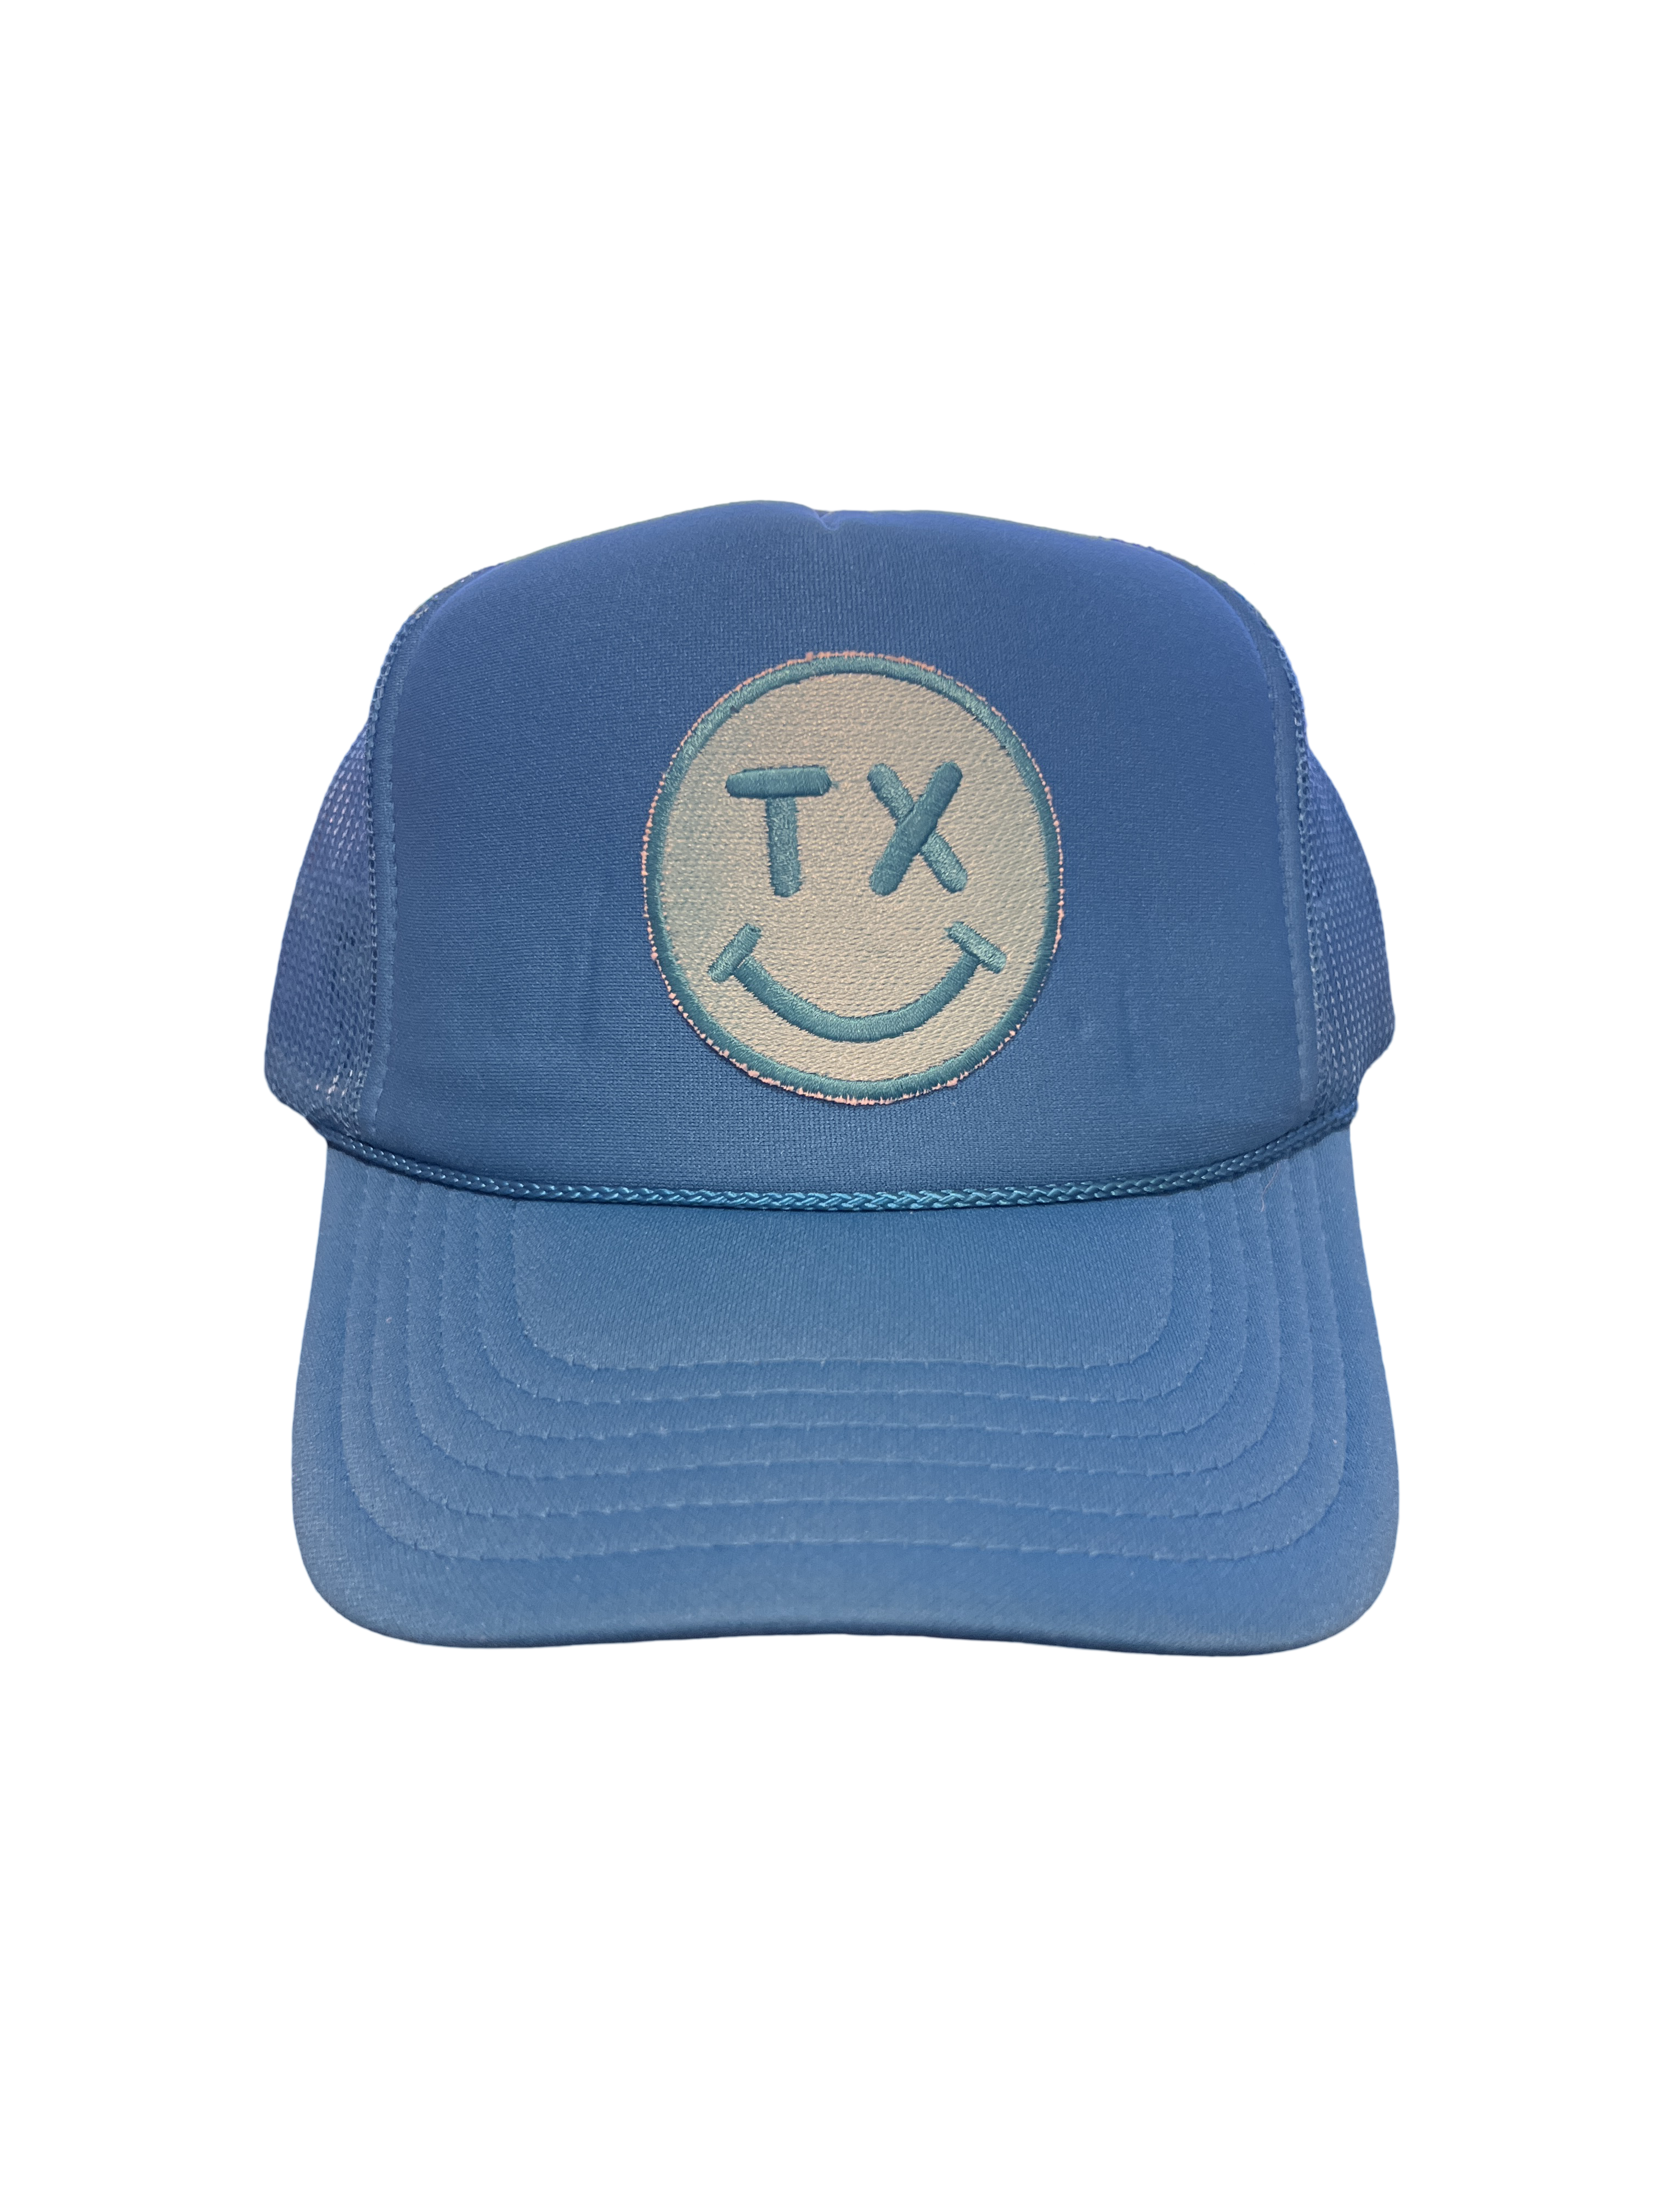 Trucker Hat Foam "TX Smiley Face"